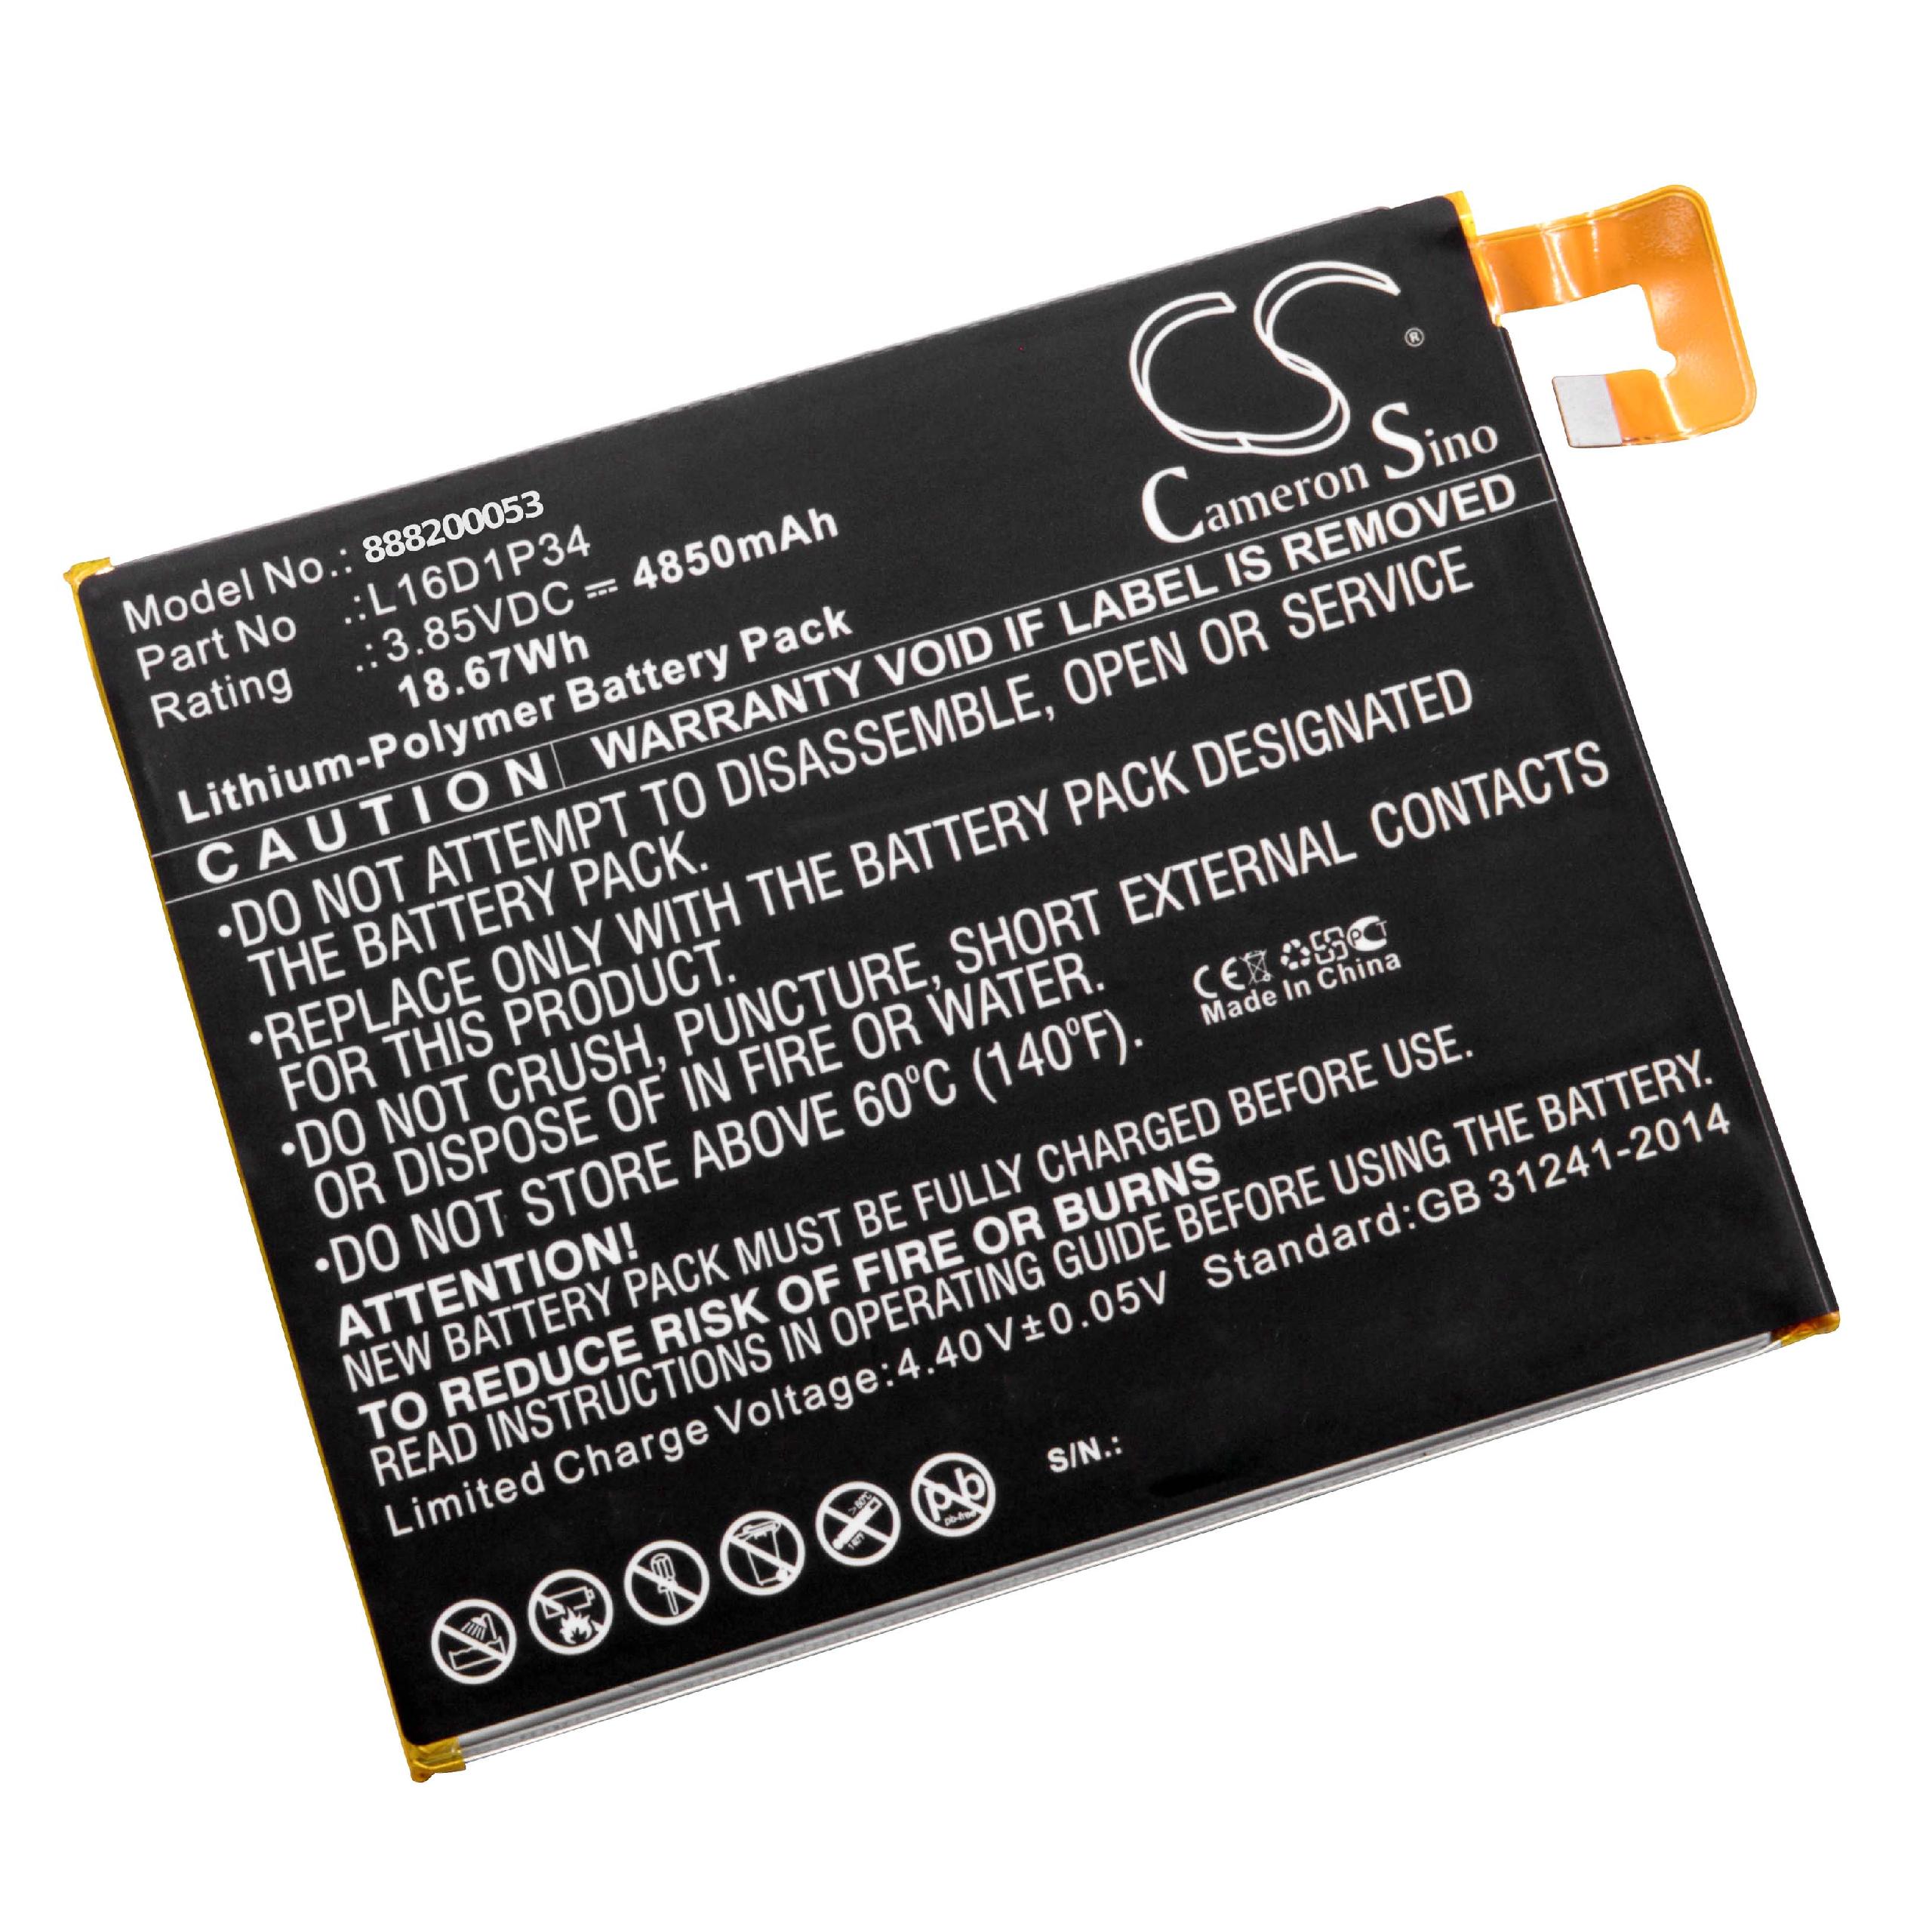 Batterie remplace Lenovo L16D1P34 pour tablette - 4850mAh 3,85V Li-polymère